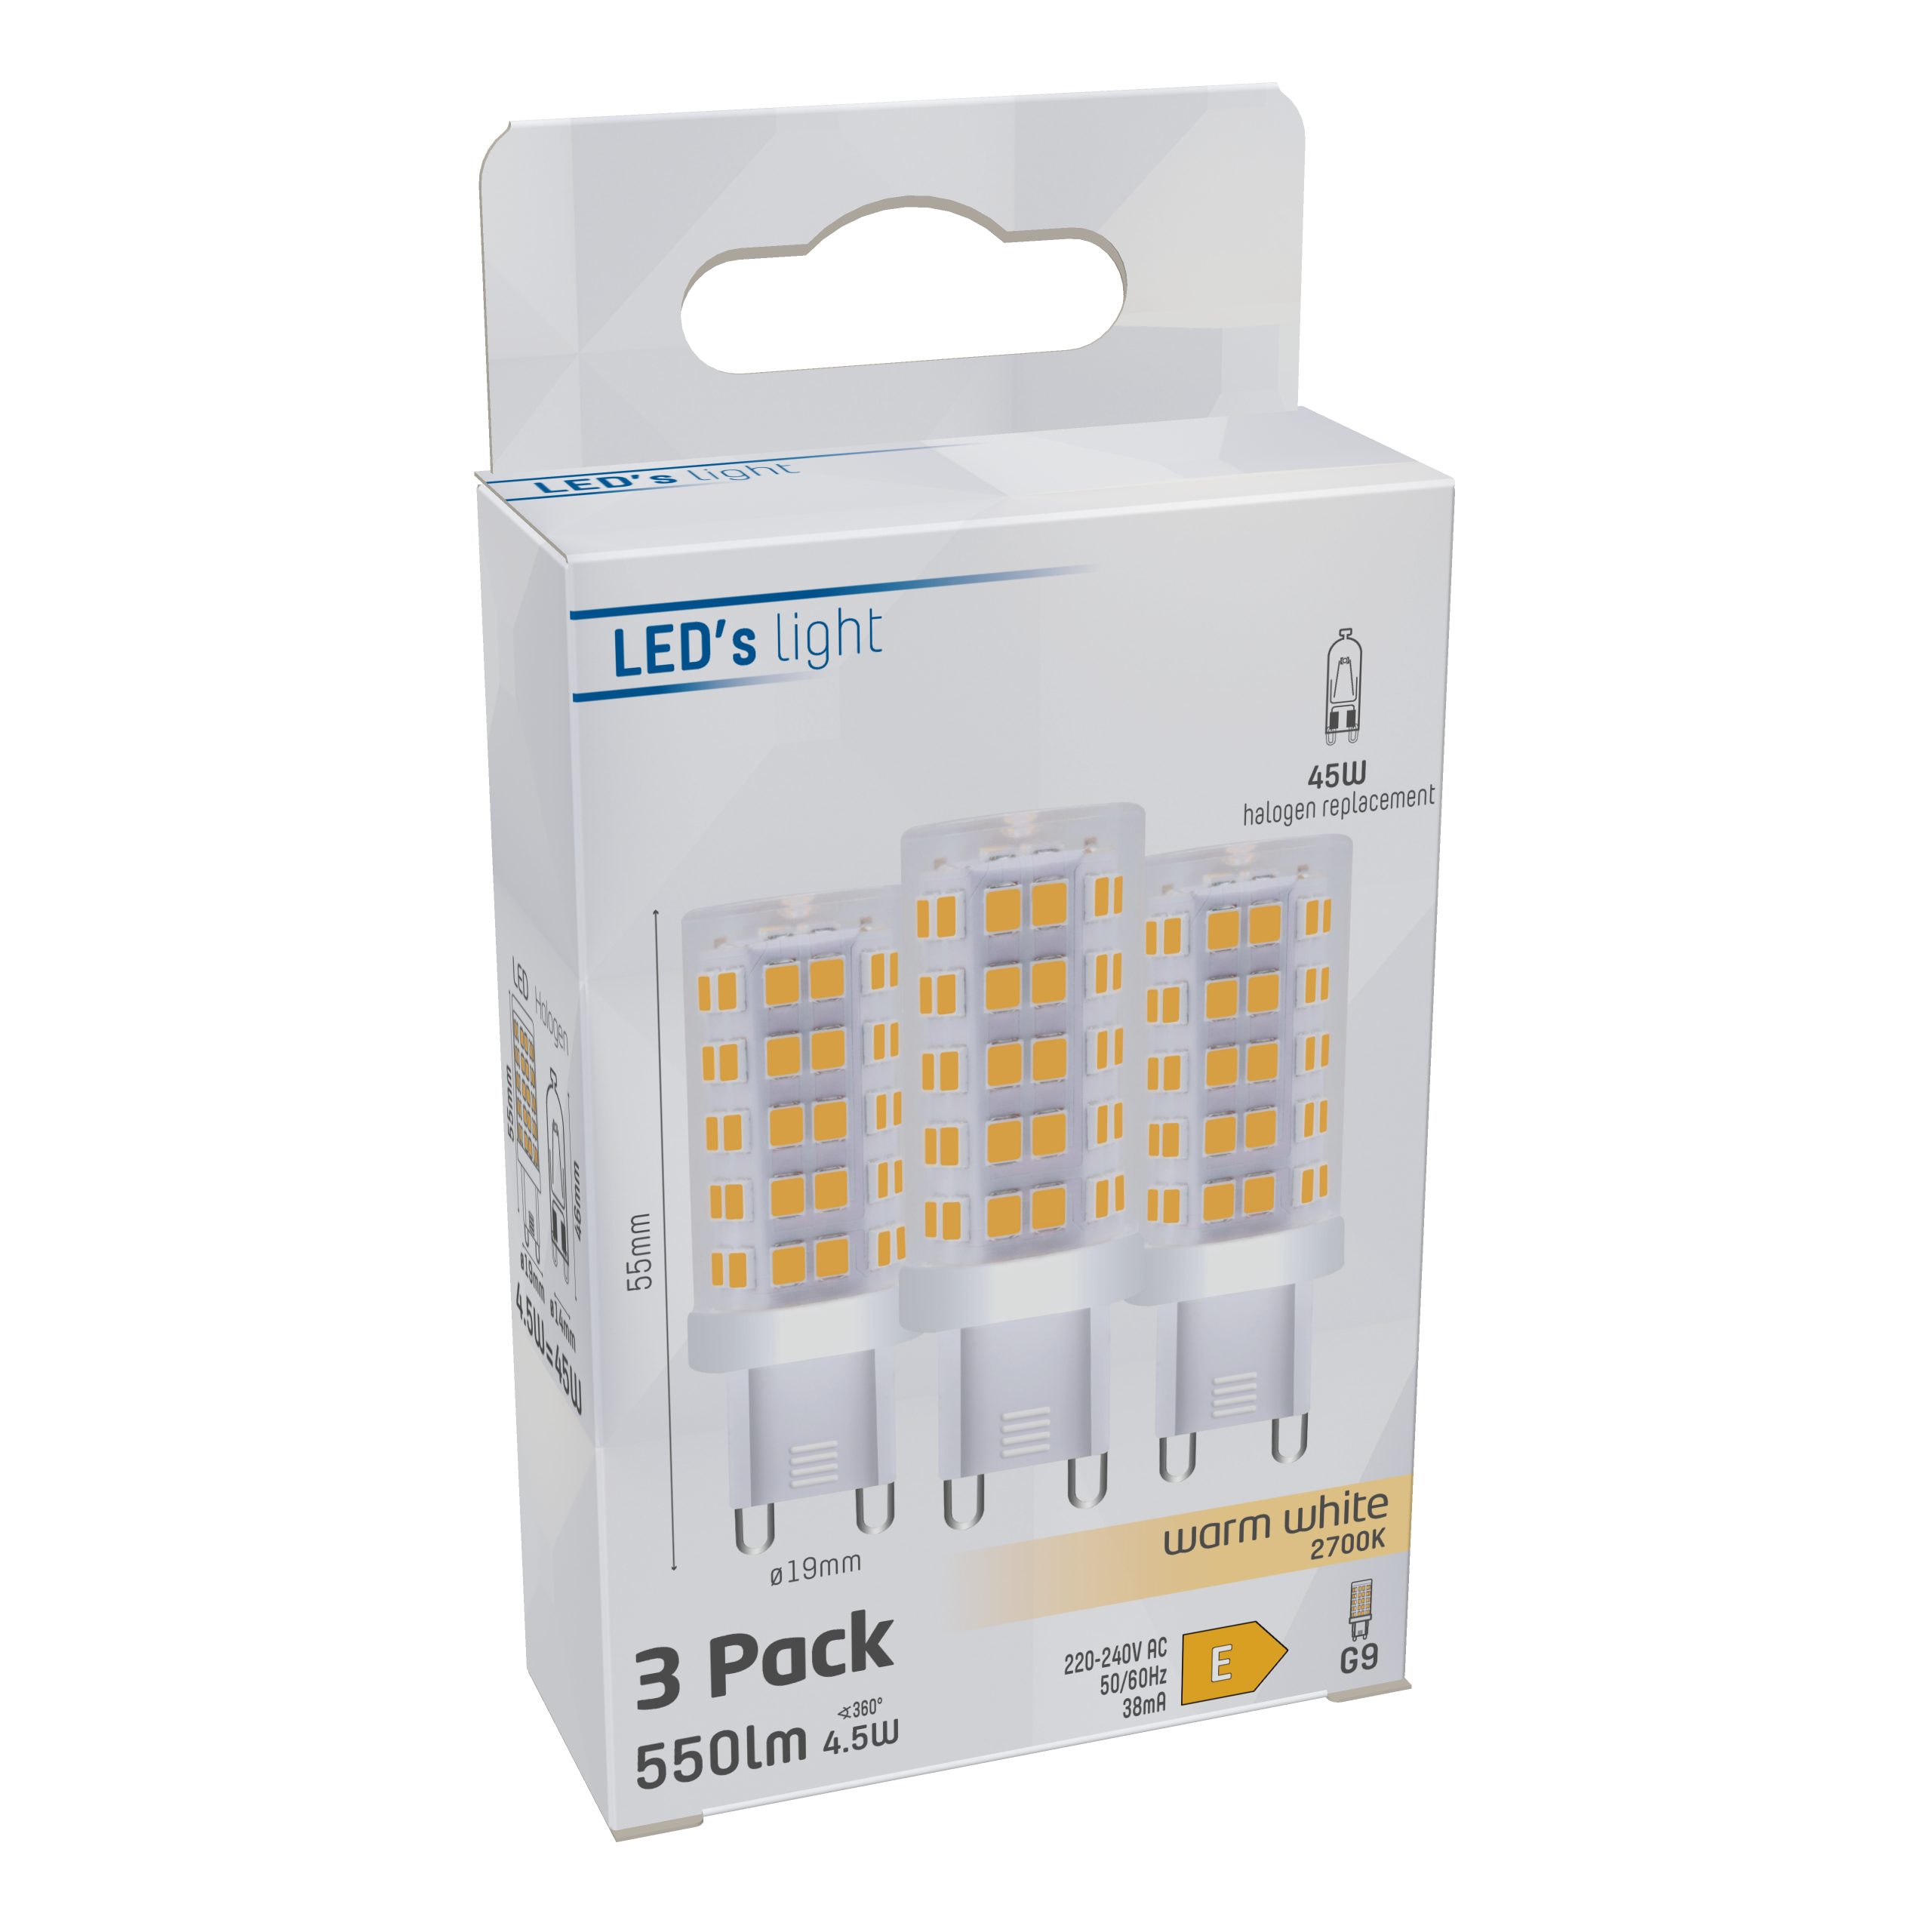 LED's light LED-Leuchtmittel Klar Kapsel, warmweiß 0620136 4.5W G9, LED 3-Pack G9